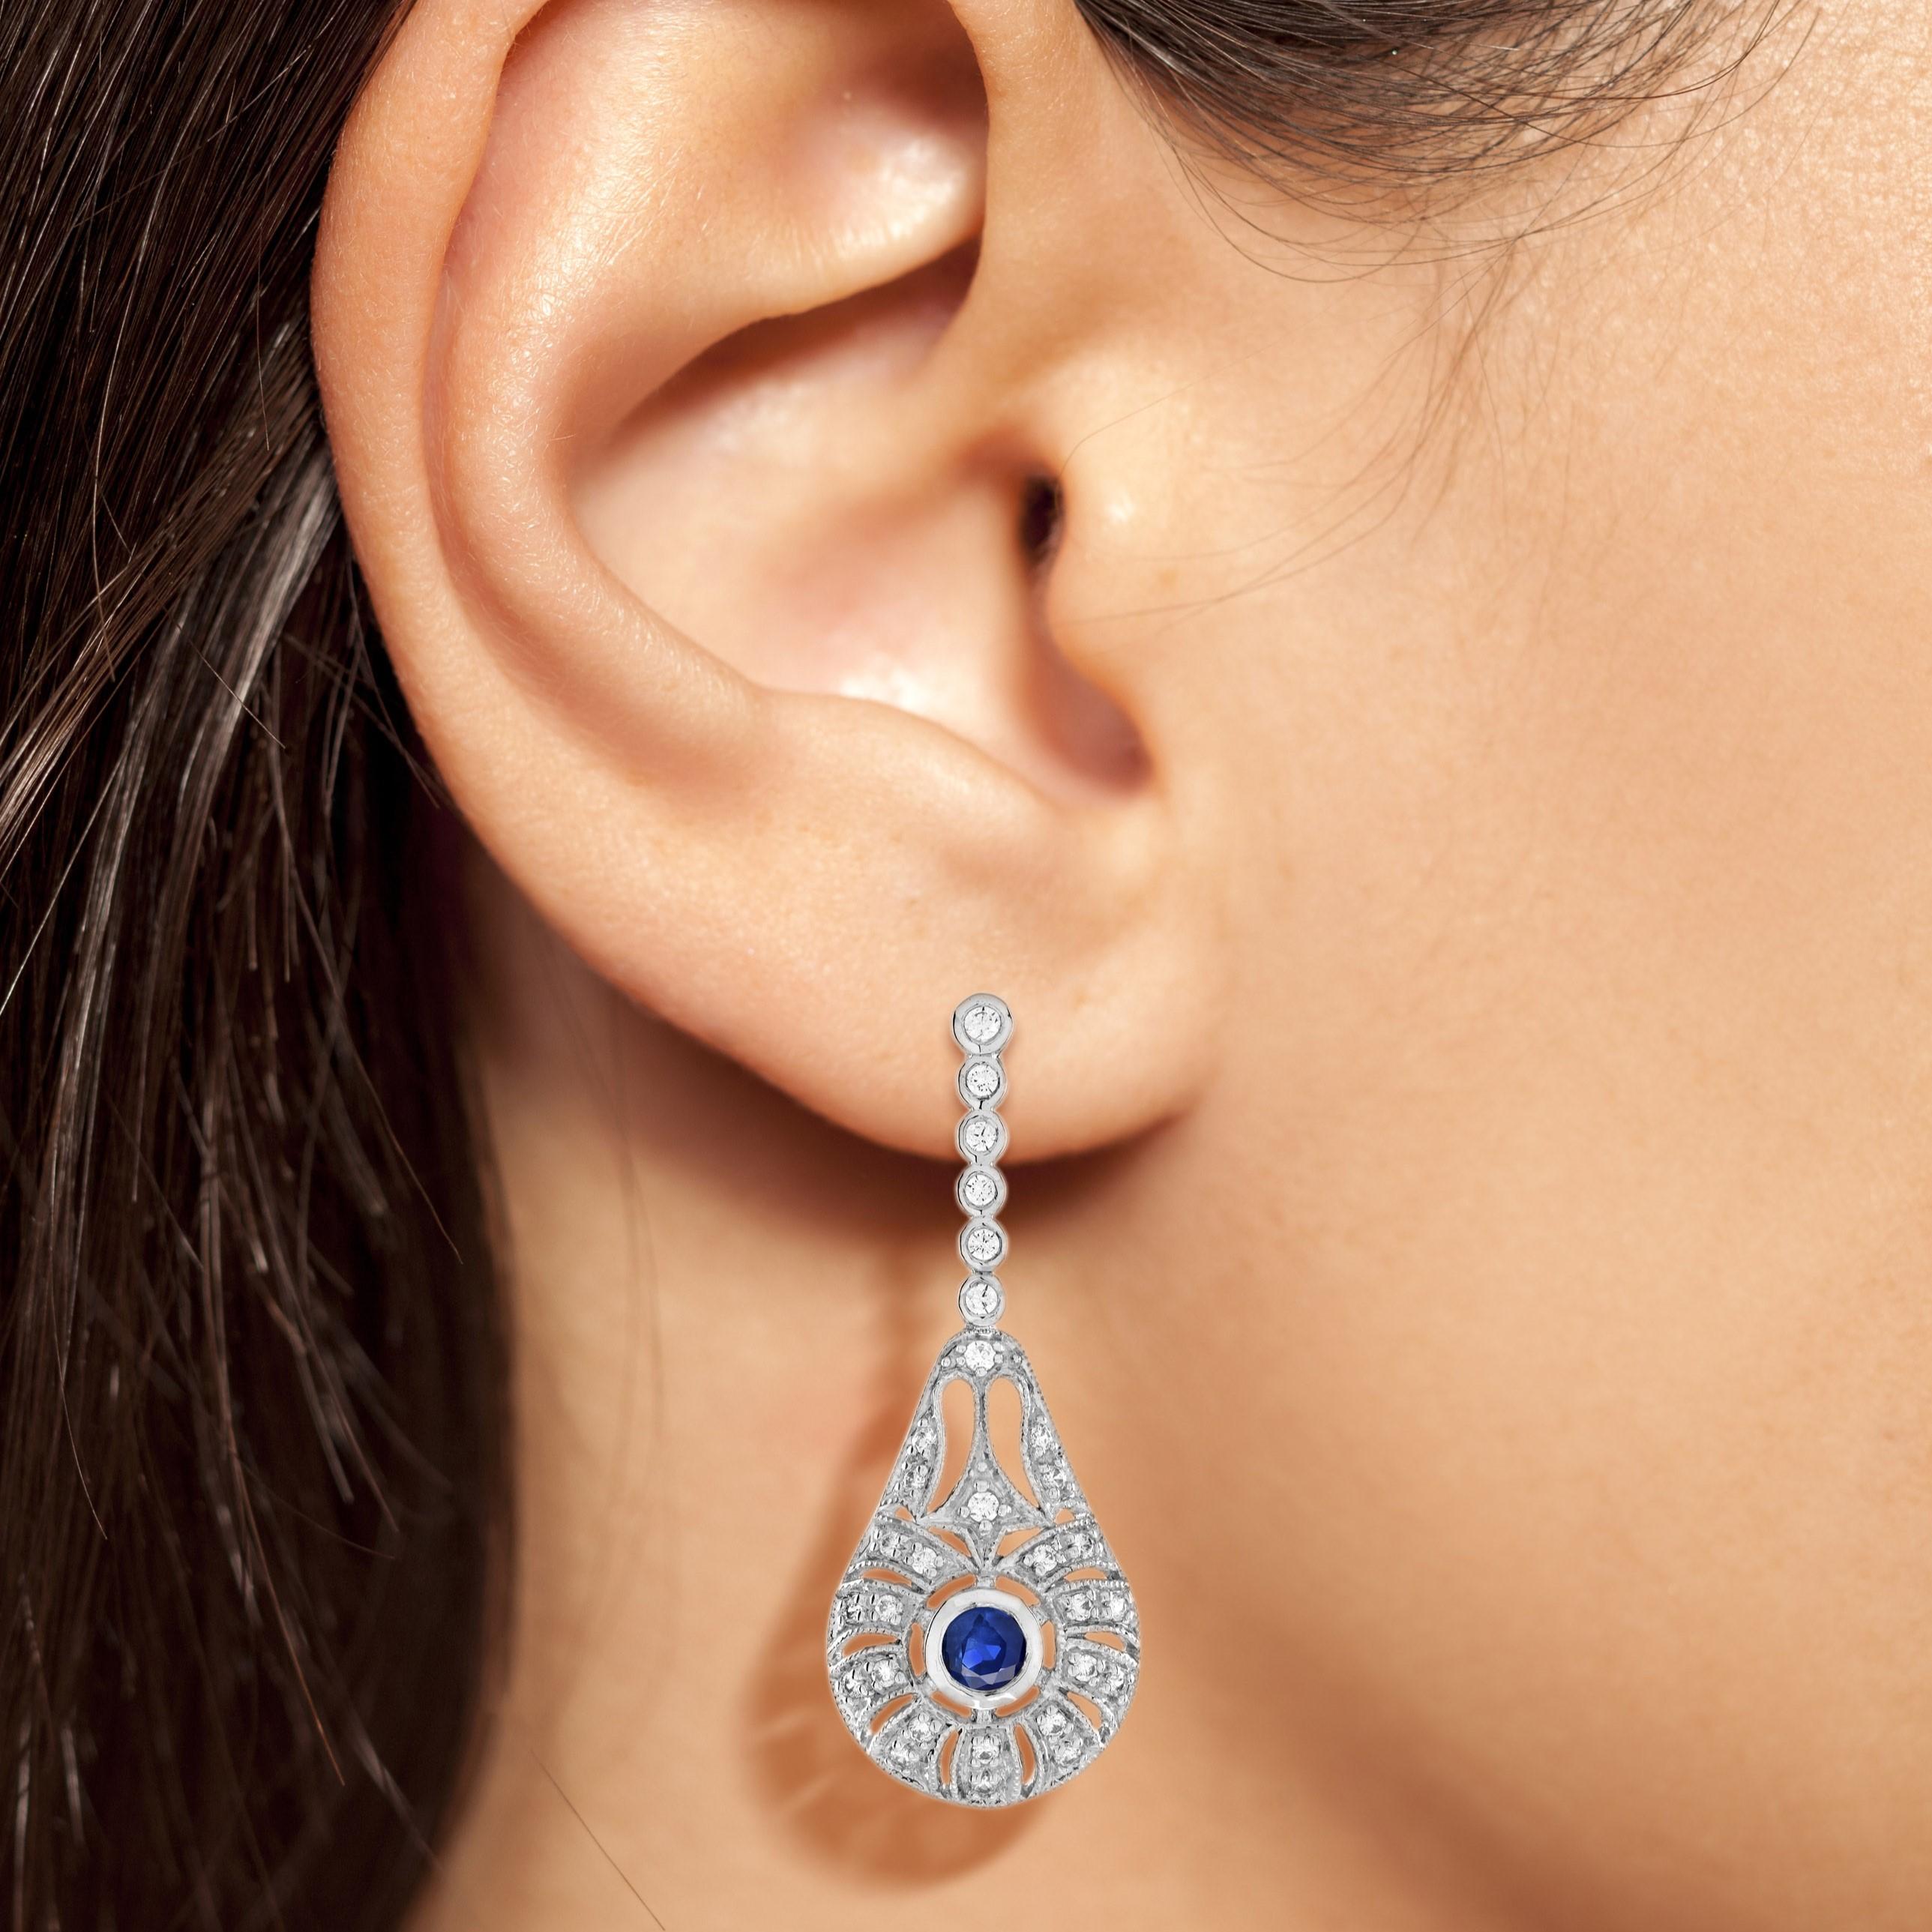 Ces élégantes boucles d'oreilles en saphir bleu et diamant apportent le glamour avec un design chic et sophistiqué de style Art déco ! Le saphir bleu se détache magnifiquement au centre. La monture est incrustée de diamants éclatants. Ces boucles